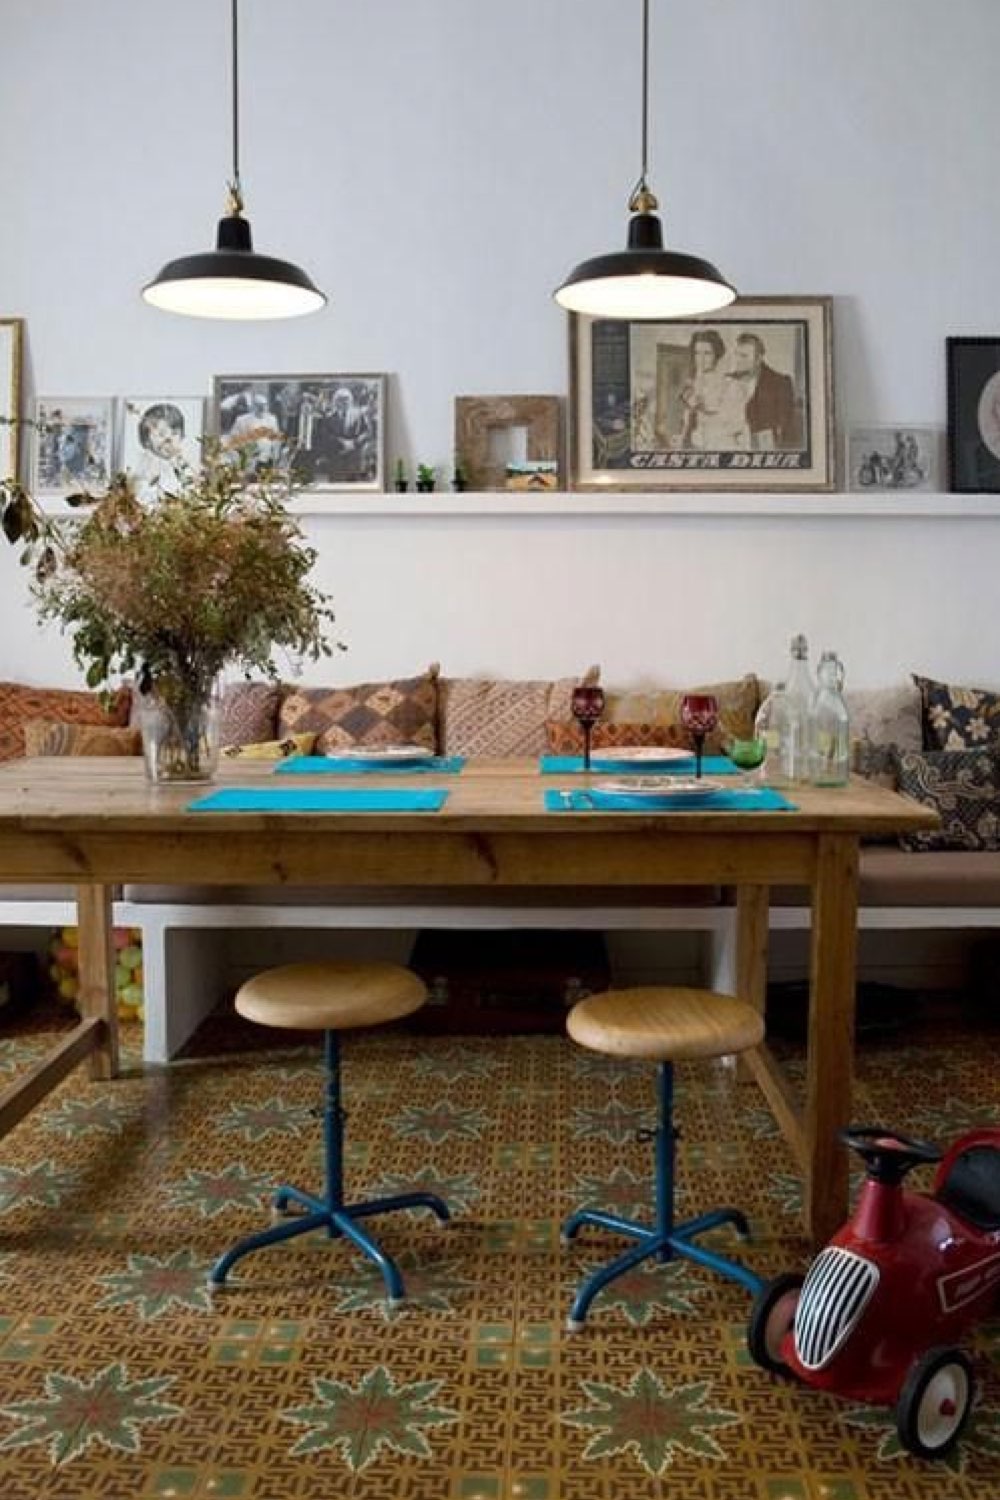 comment reussir deco salle a manger bohème voyage Maghreb banquette coussin étagères avec vieille photo de famille table en bois tabouret industriel 